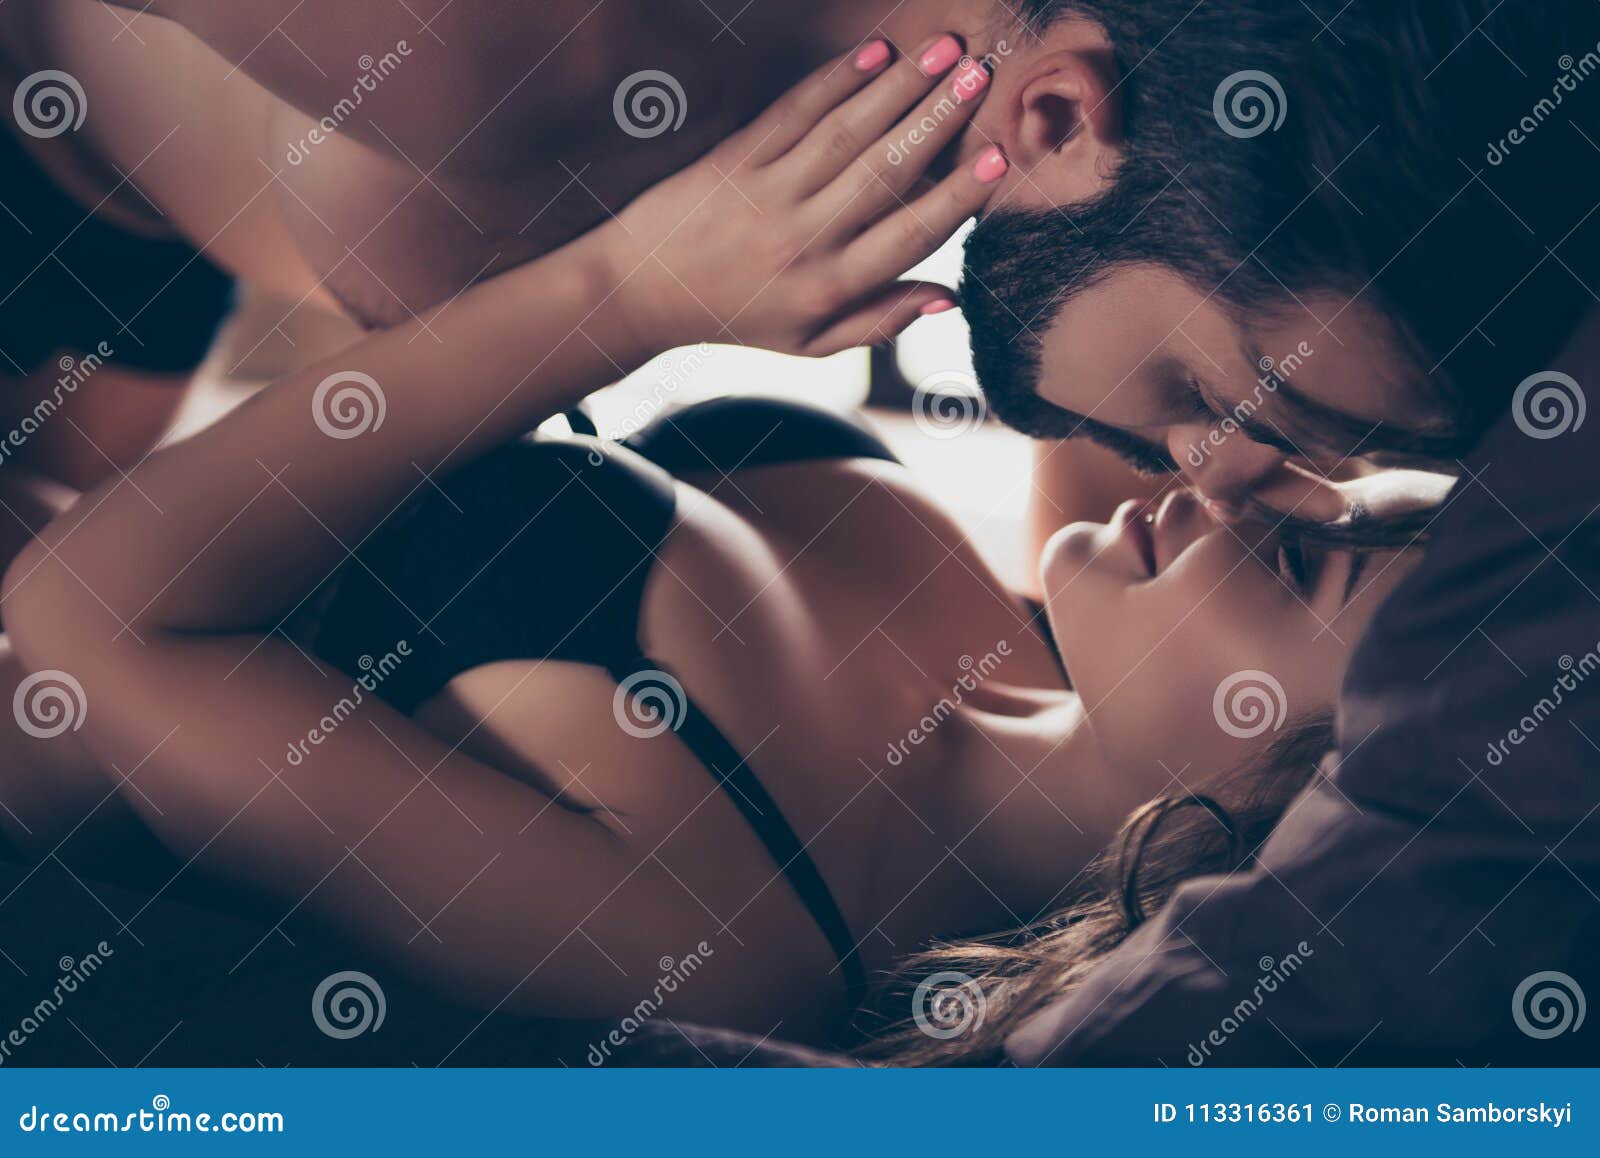 Brandi Love Tits Star Milf Threesome